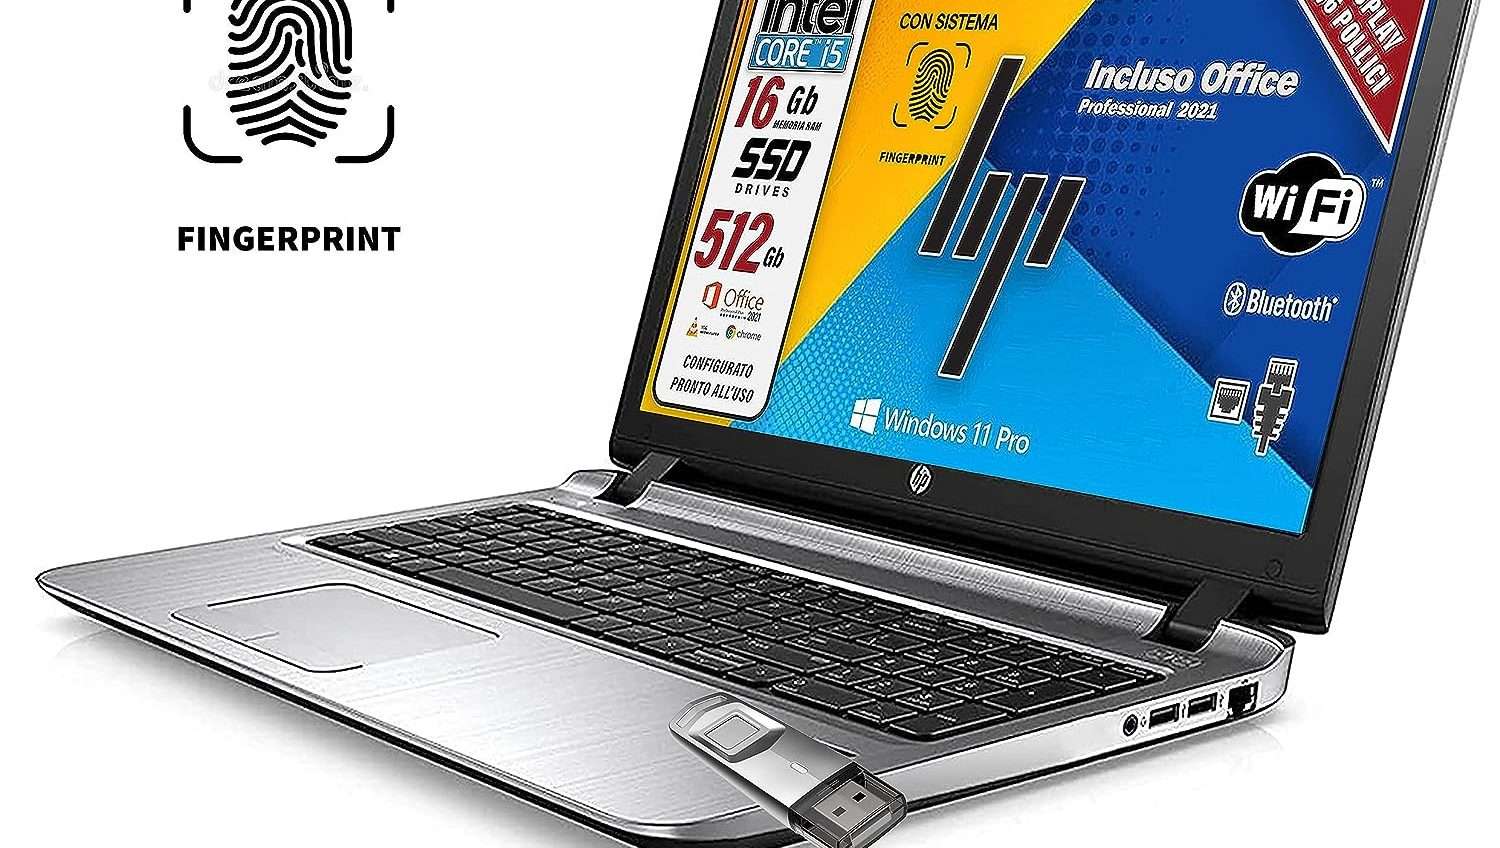 HP Probook, ottimo laptop ricondizionato in offerta su Amazon: solo 319€ e lettore impronte in omaggio